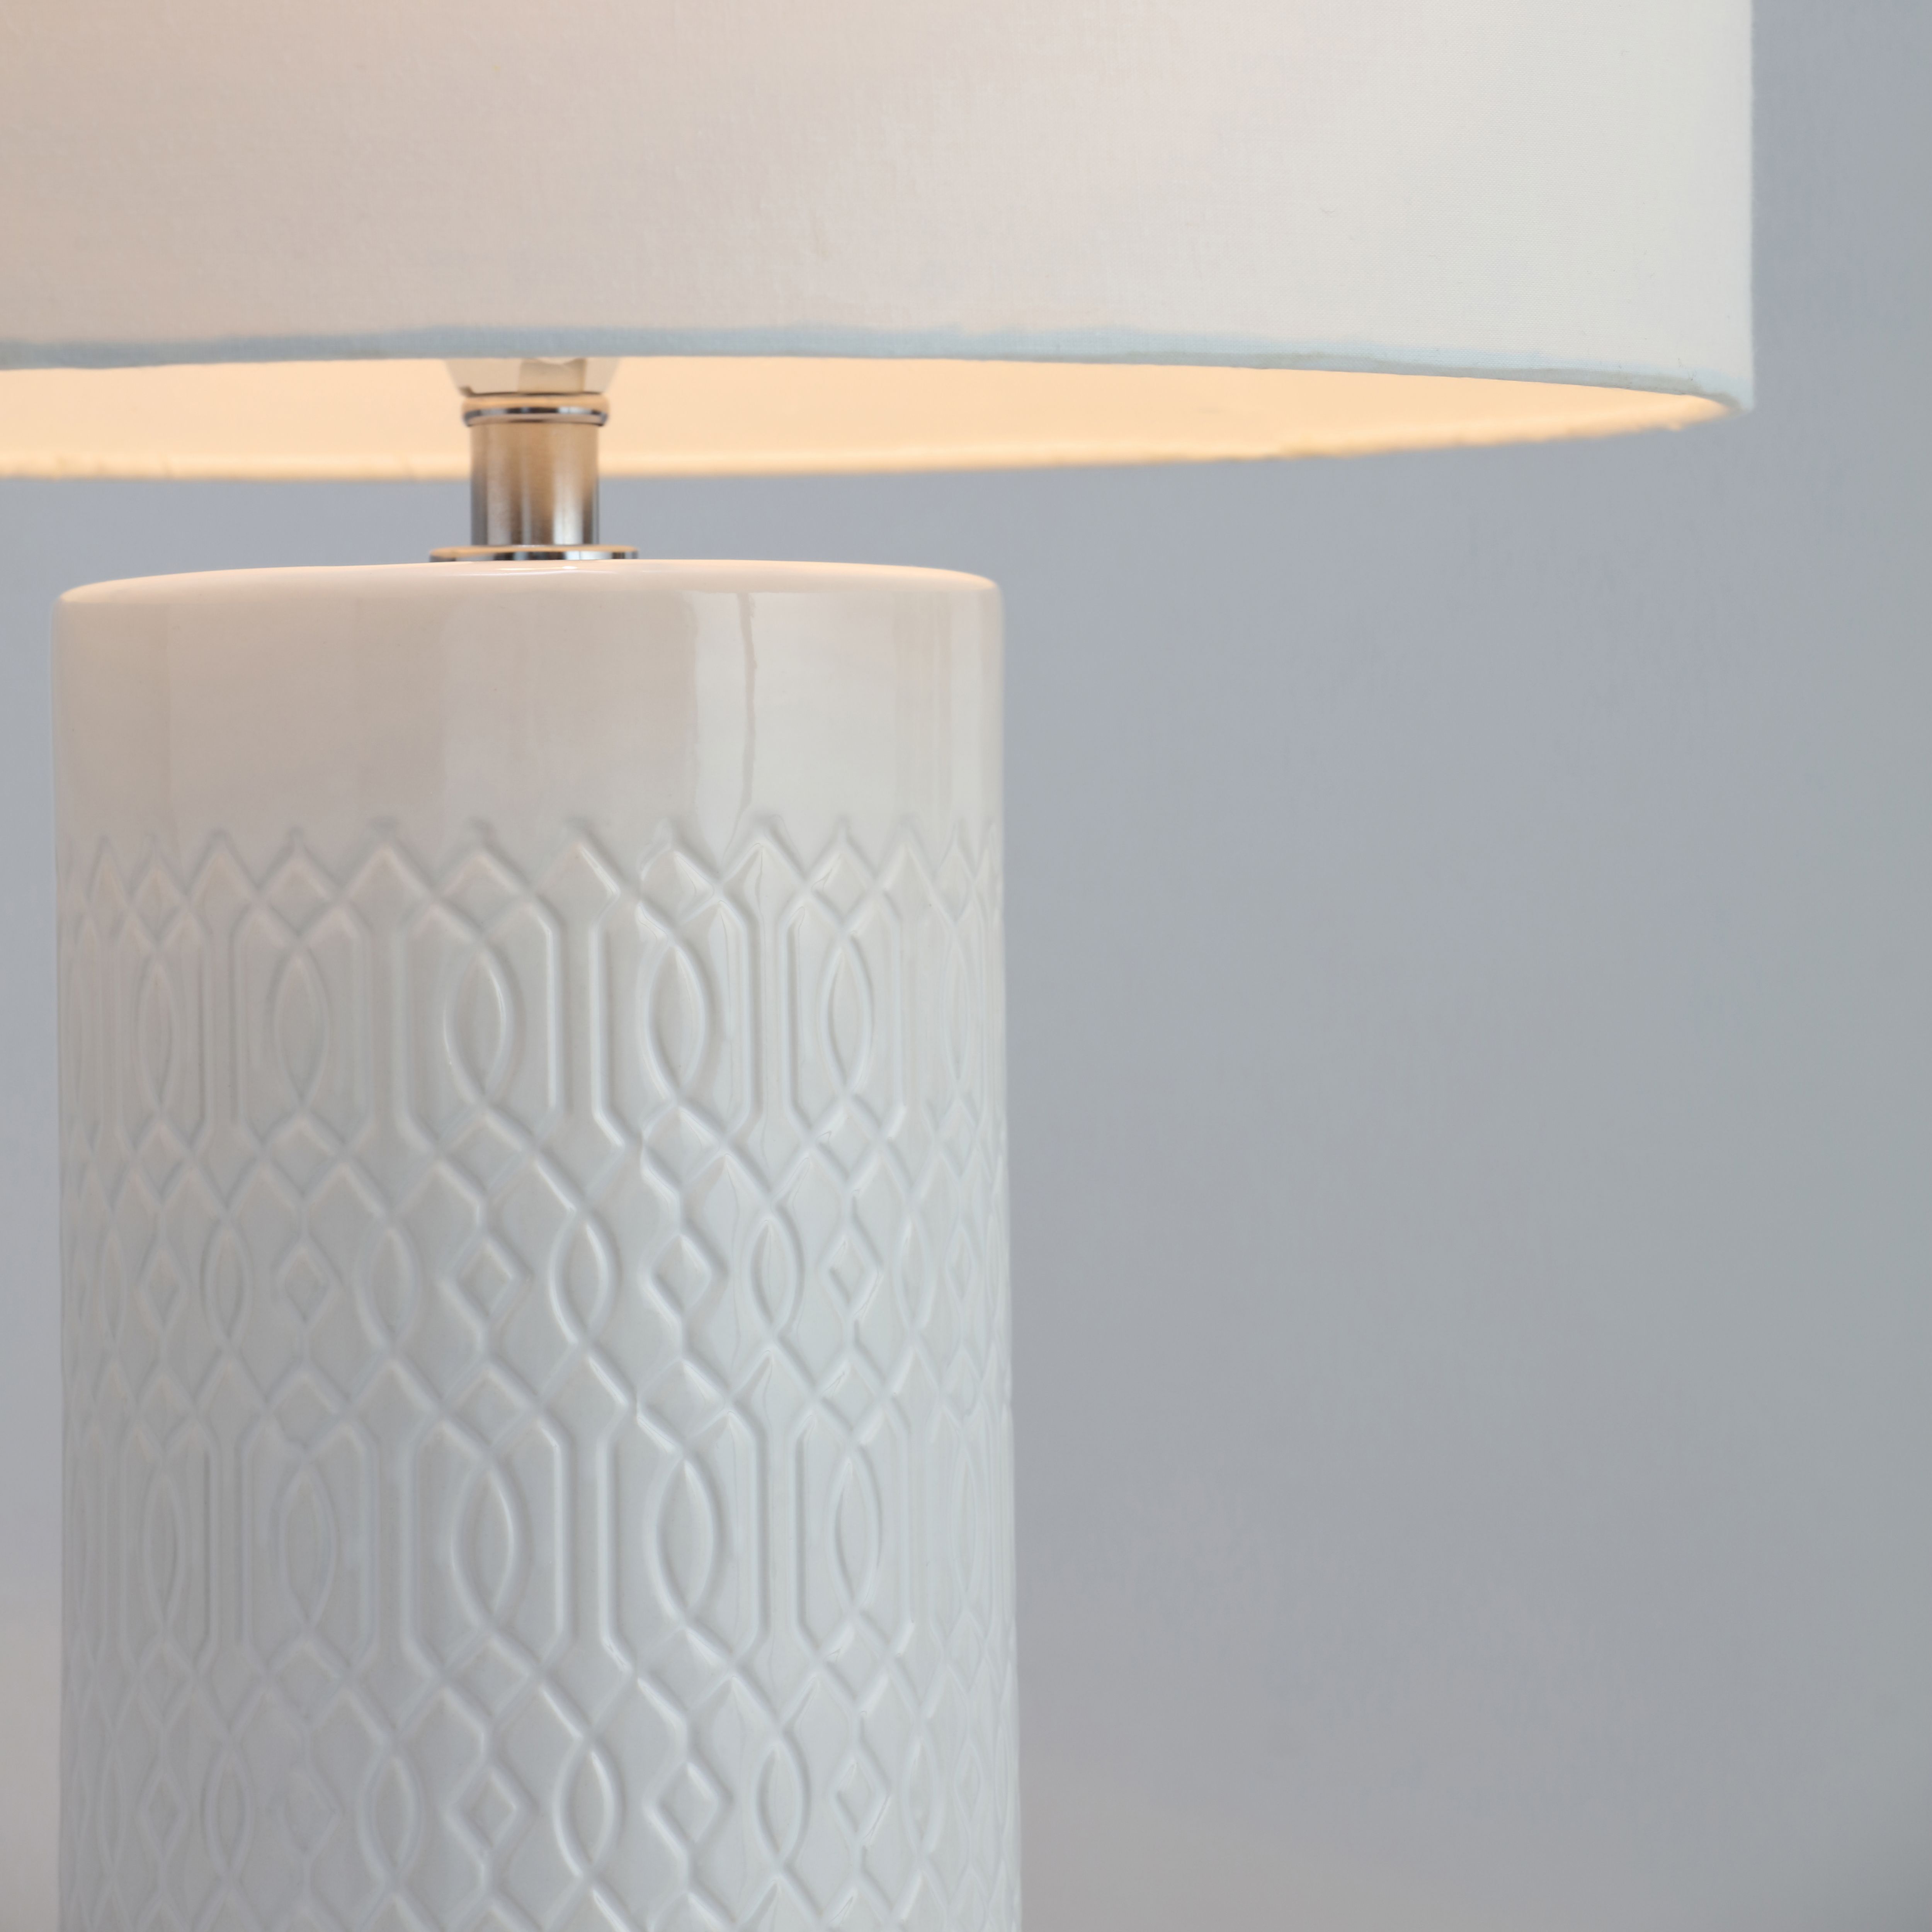 Dactyl Embossed ceramic White Table light